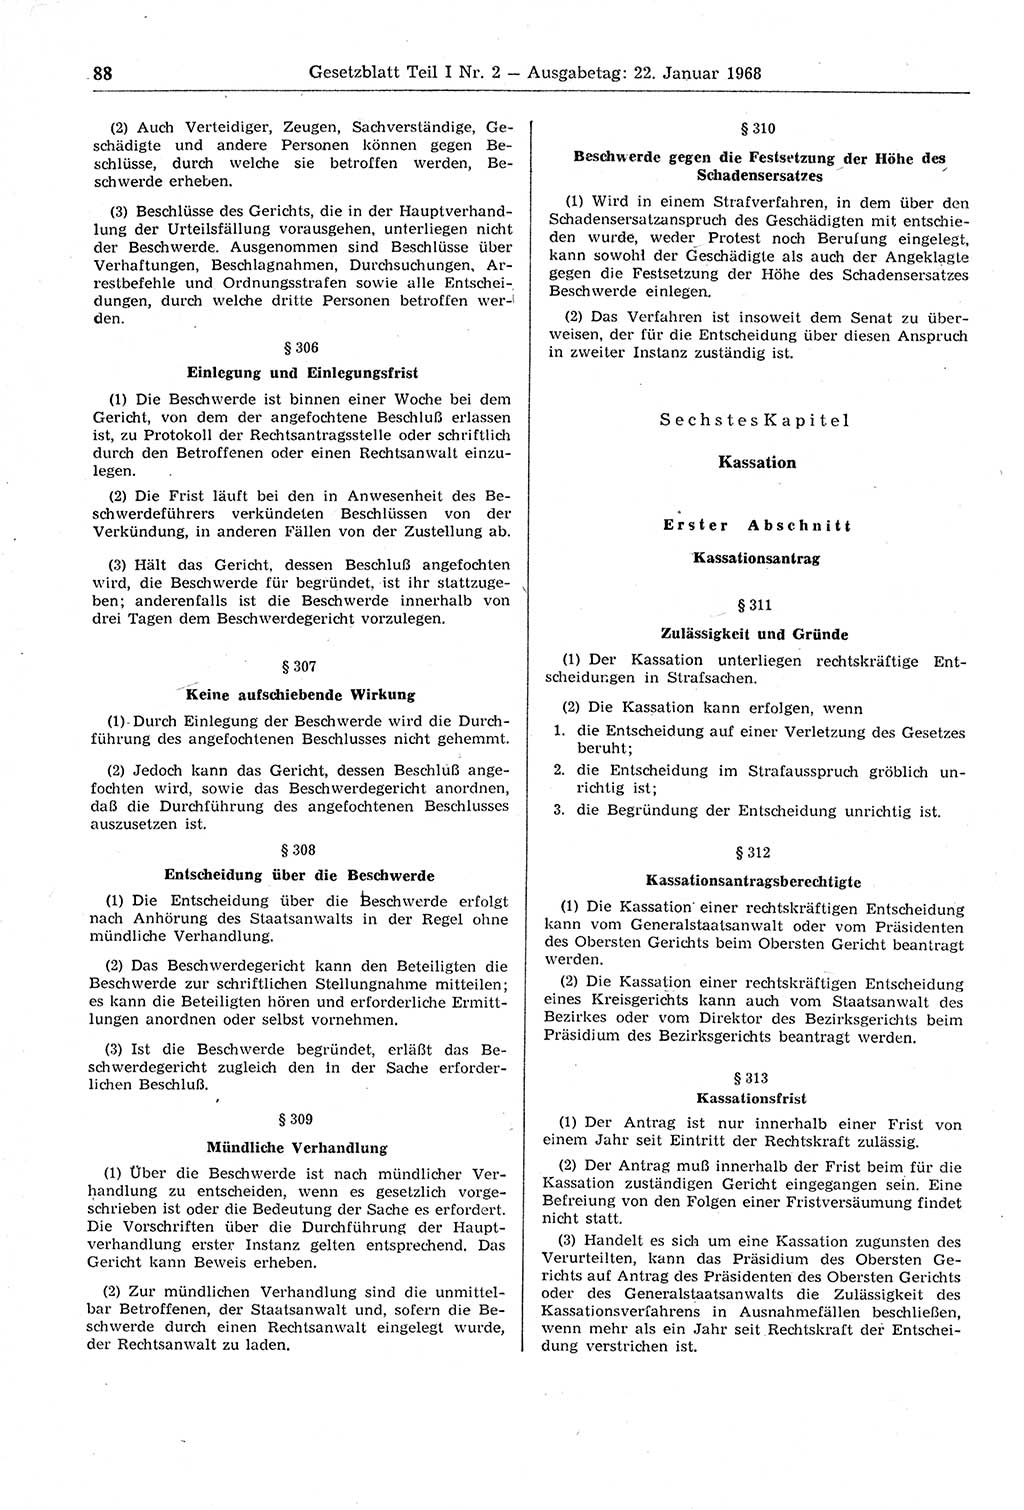 Gesetzblatt (GBl.) der Deutschen Demokratischen Republik (DDR) Teil Ⅰ 1968, Seite 88 (GBl. DDR Ⅰ 1968, S. 88)